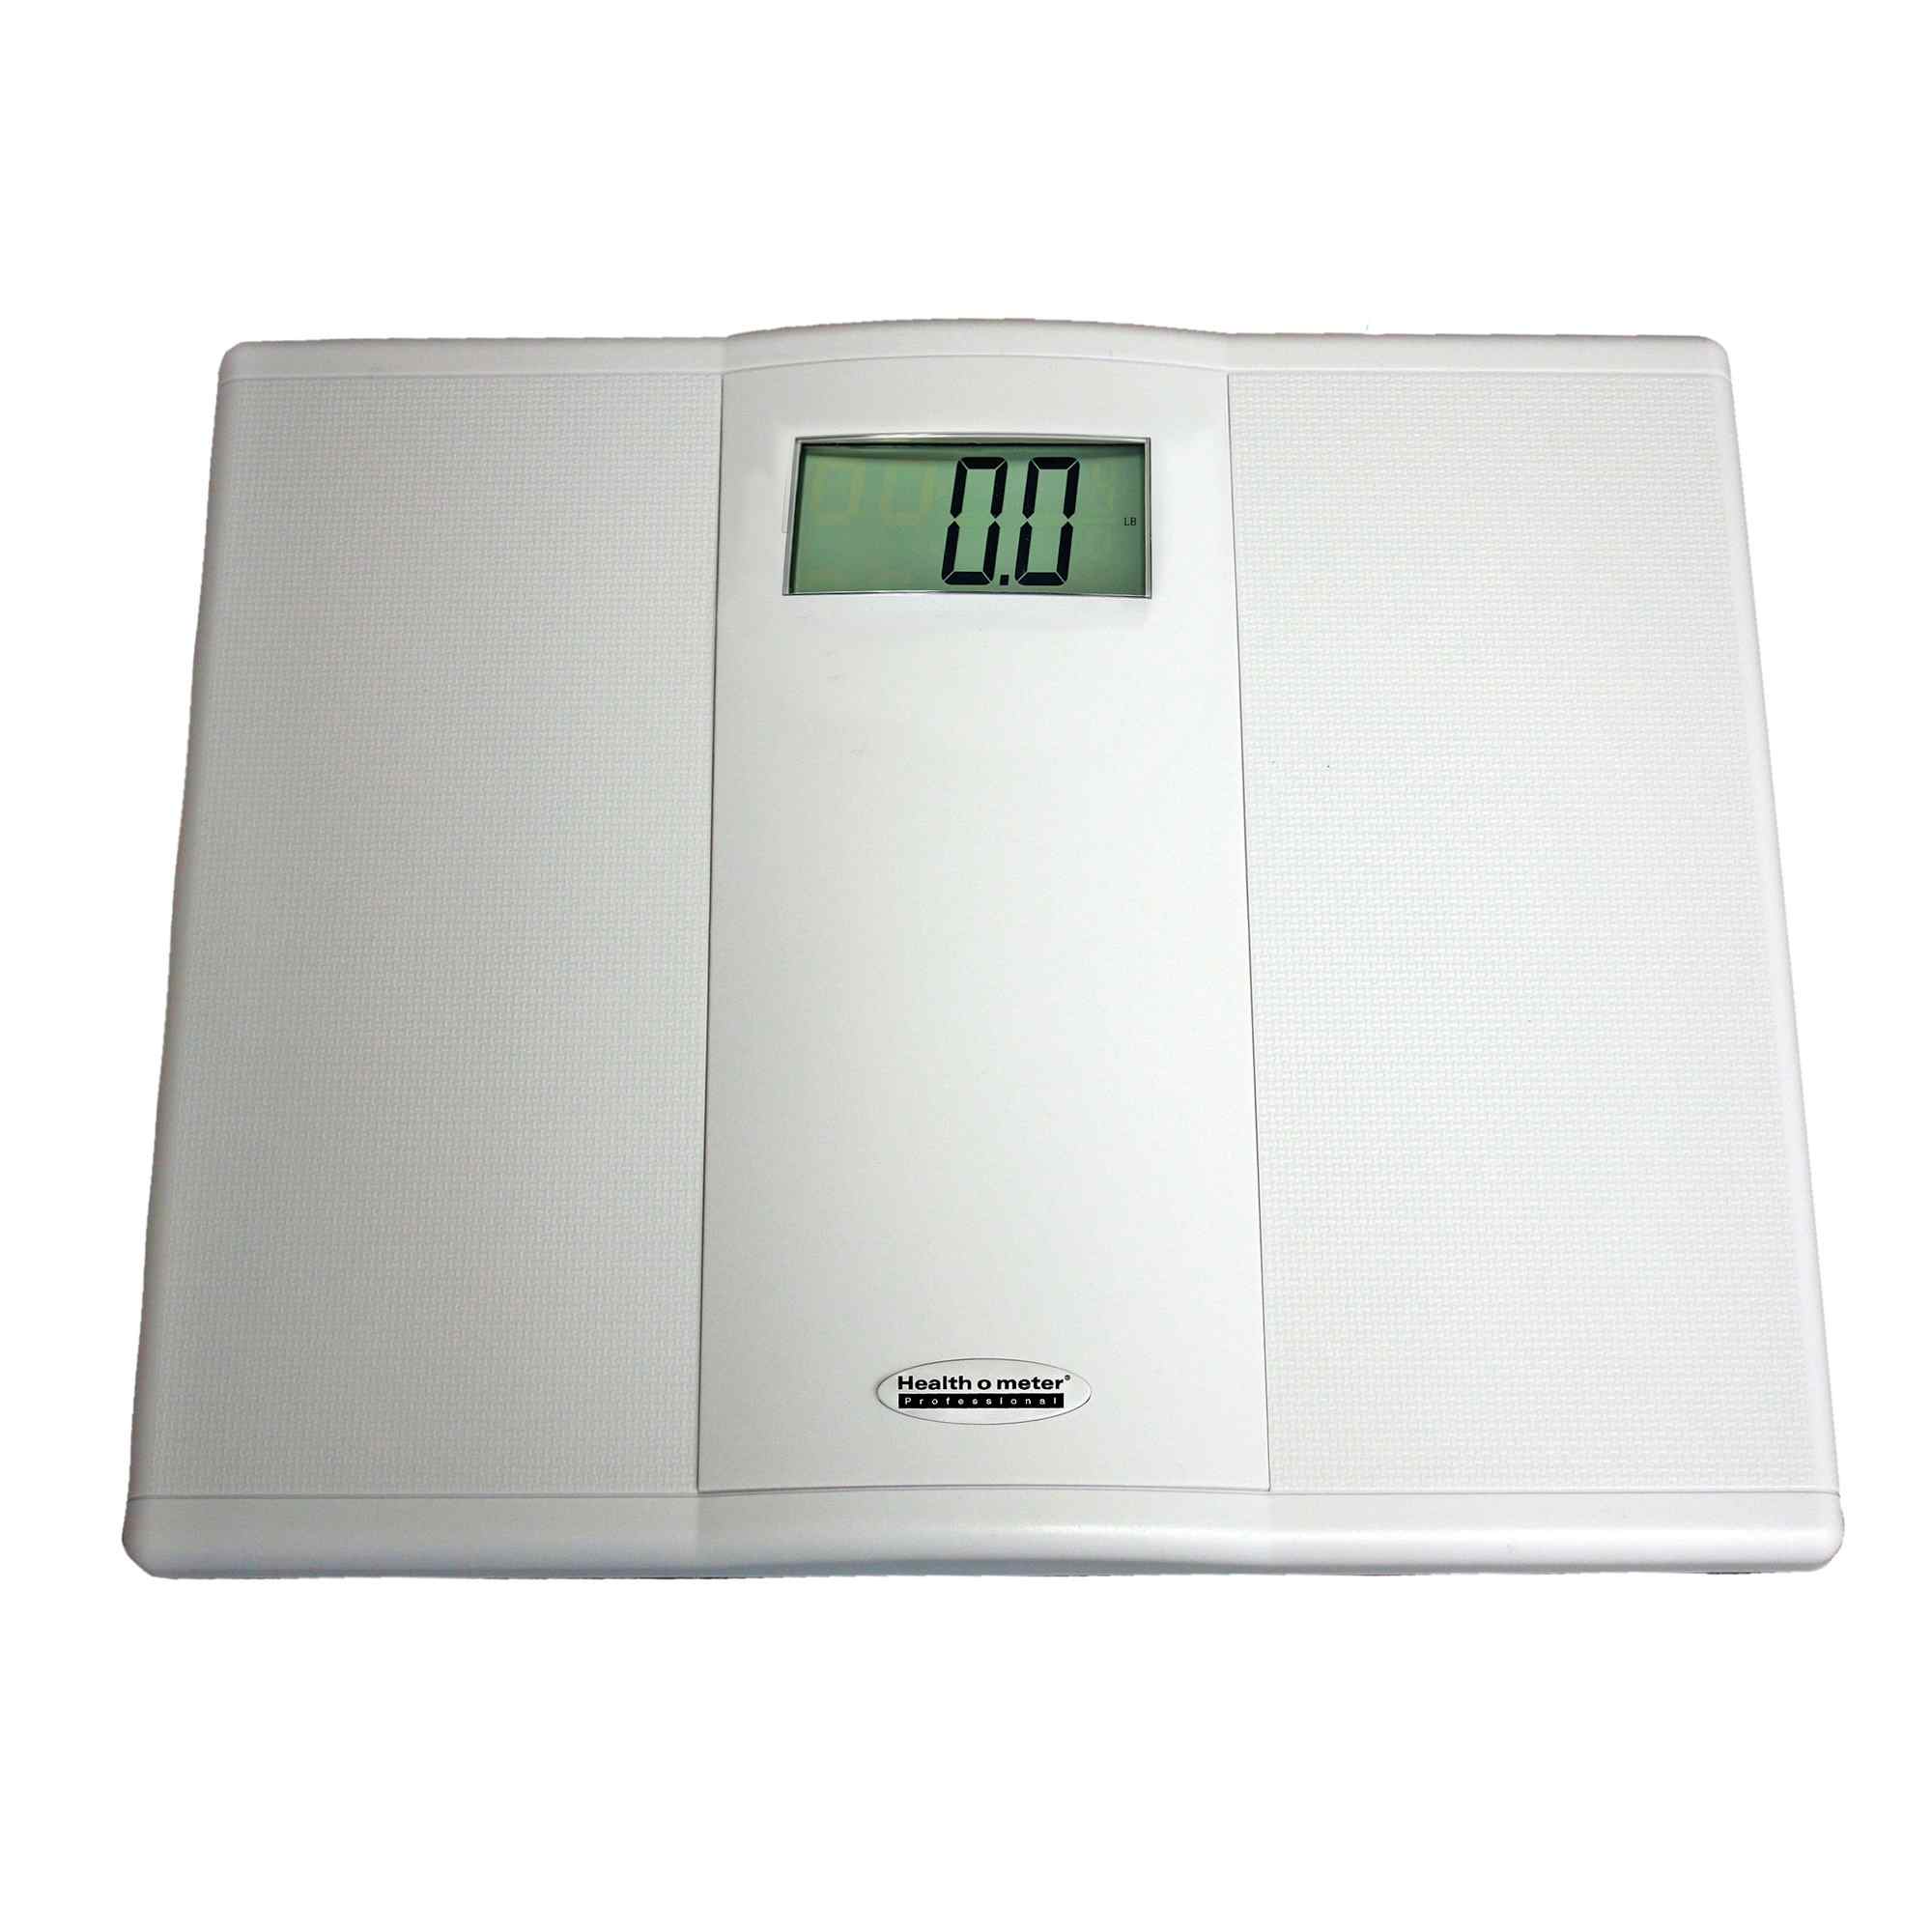 Health O Meter Digital Audio Display Floor Scale, 894KLT, 400 lb Capacity - 1 Scale